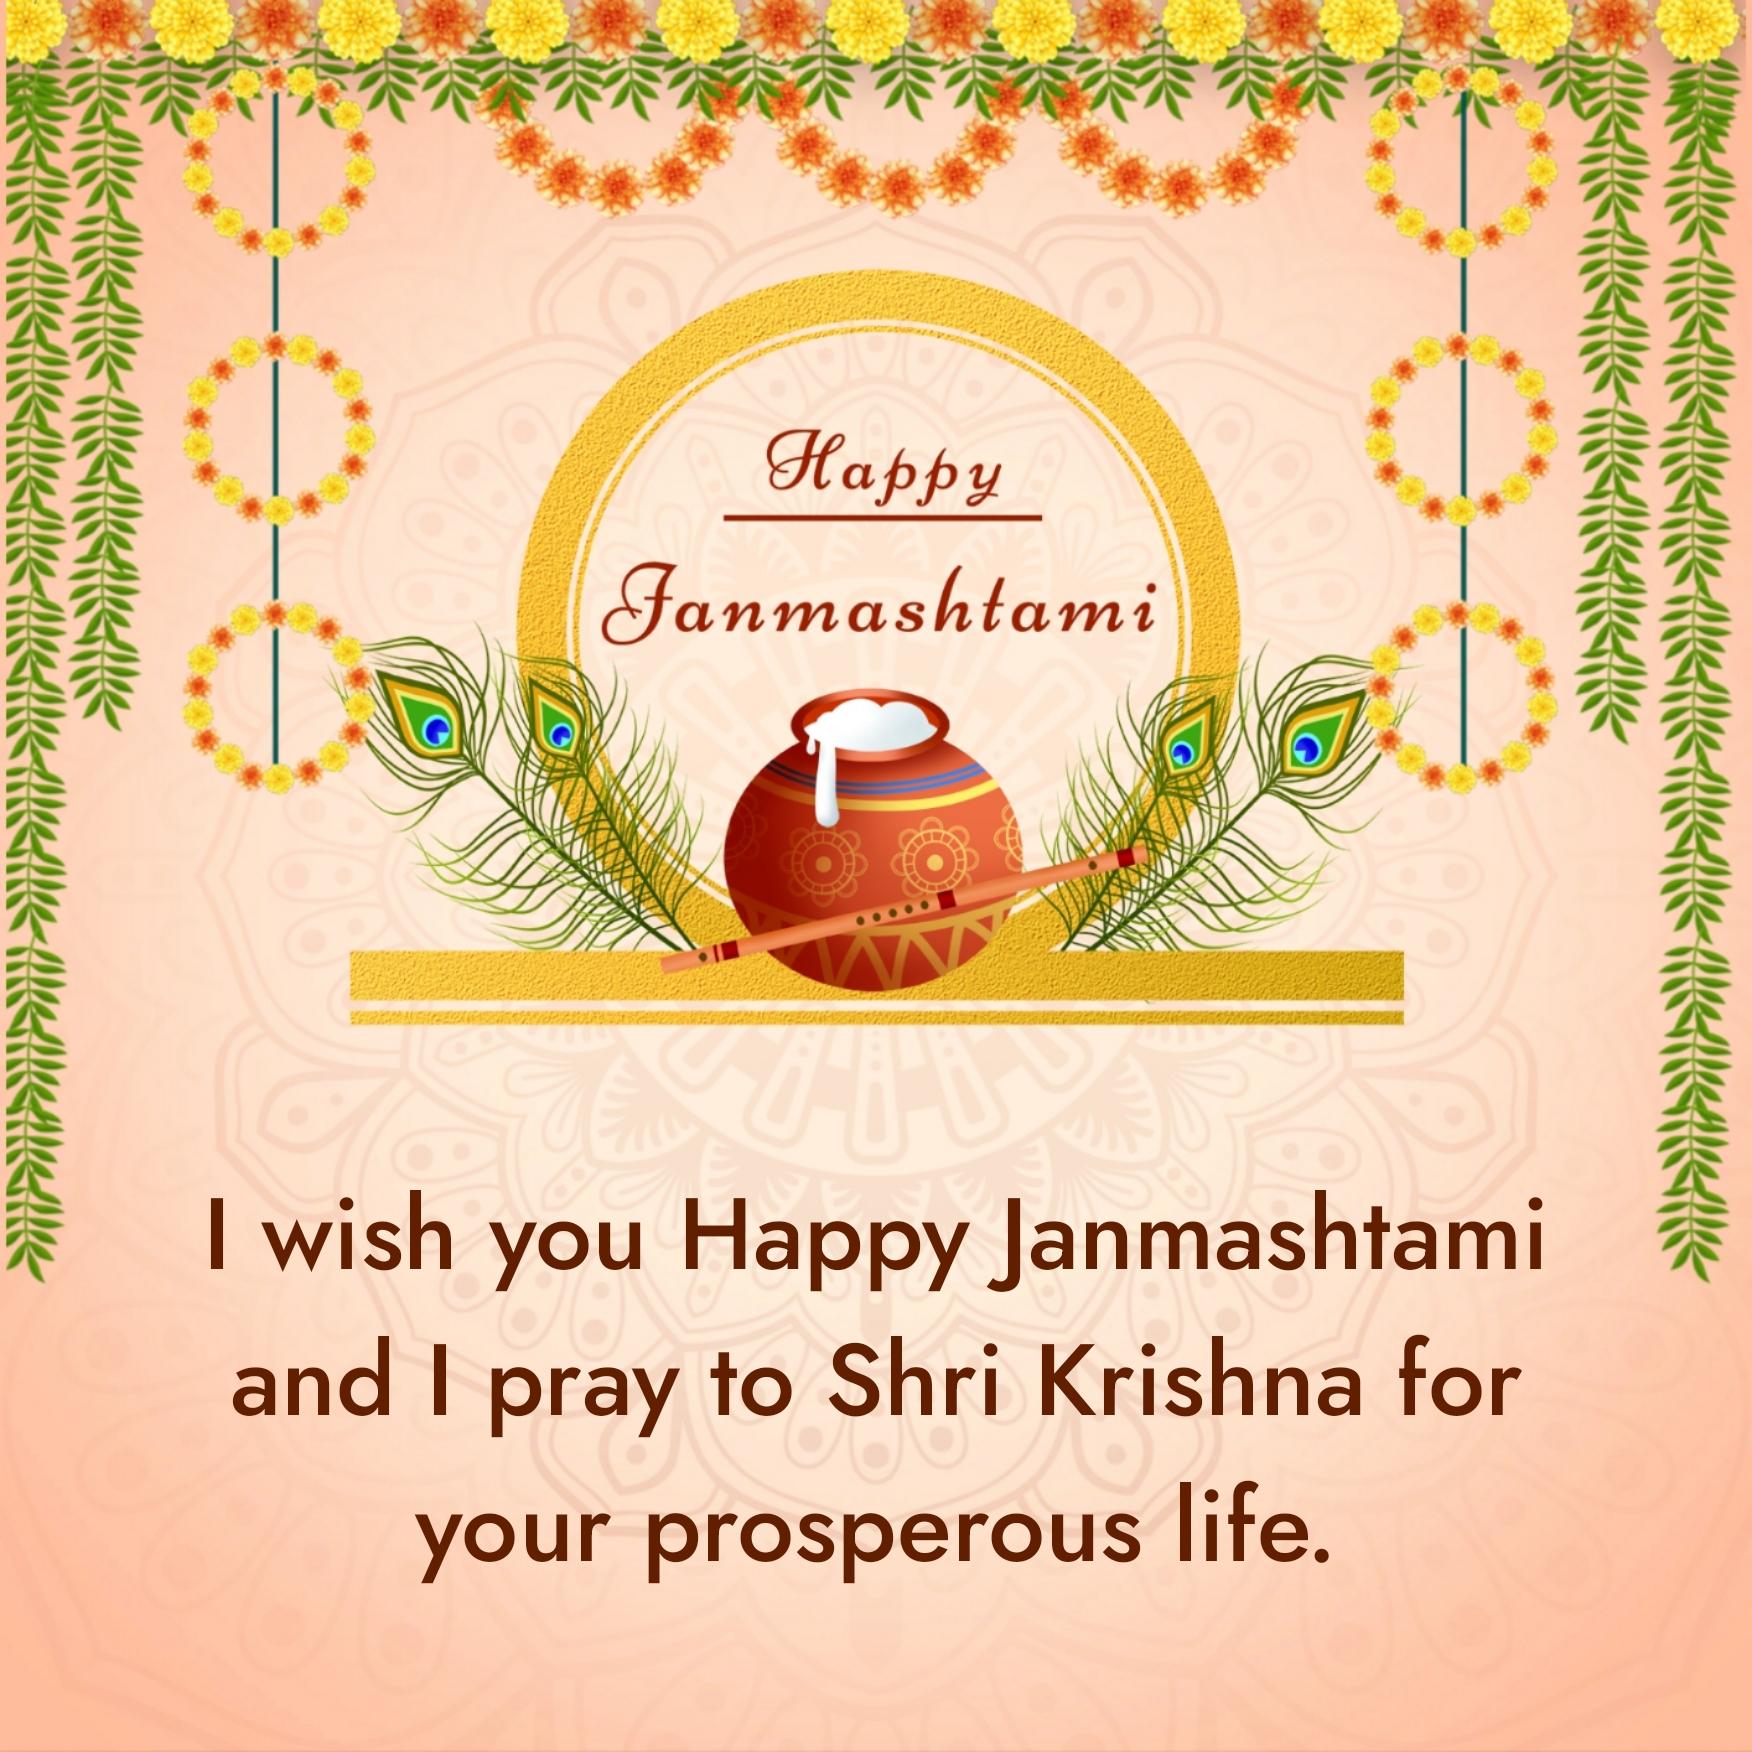 I wish you Happy Janmashtami and I pray to Shri Krishna